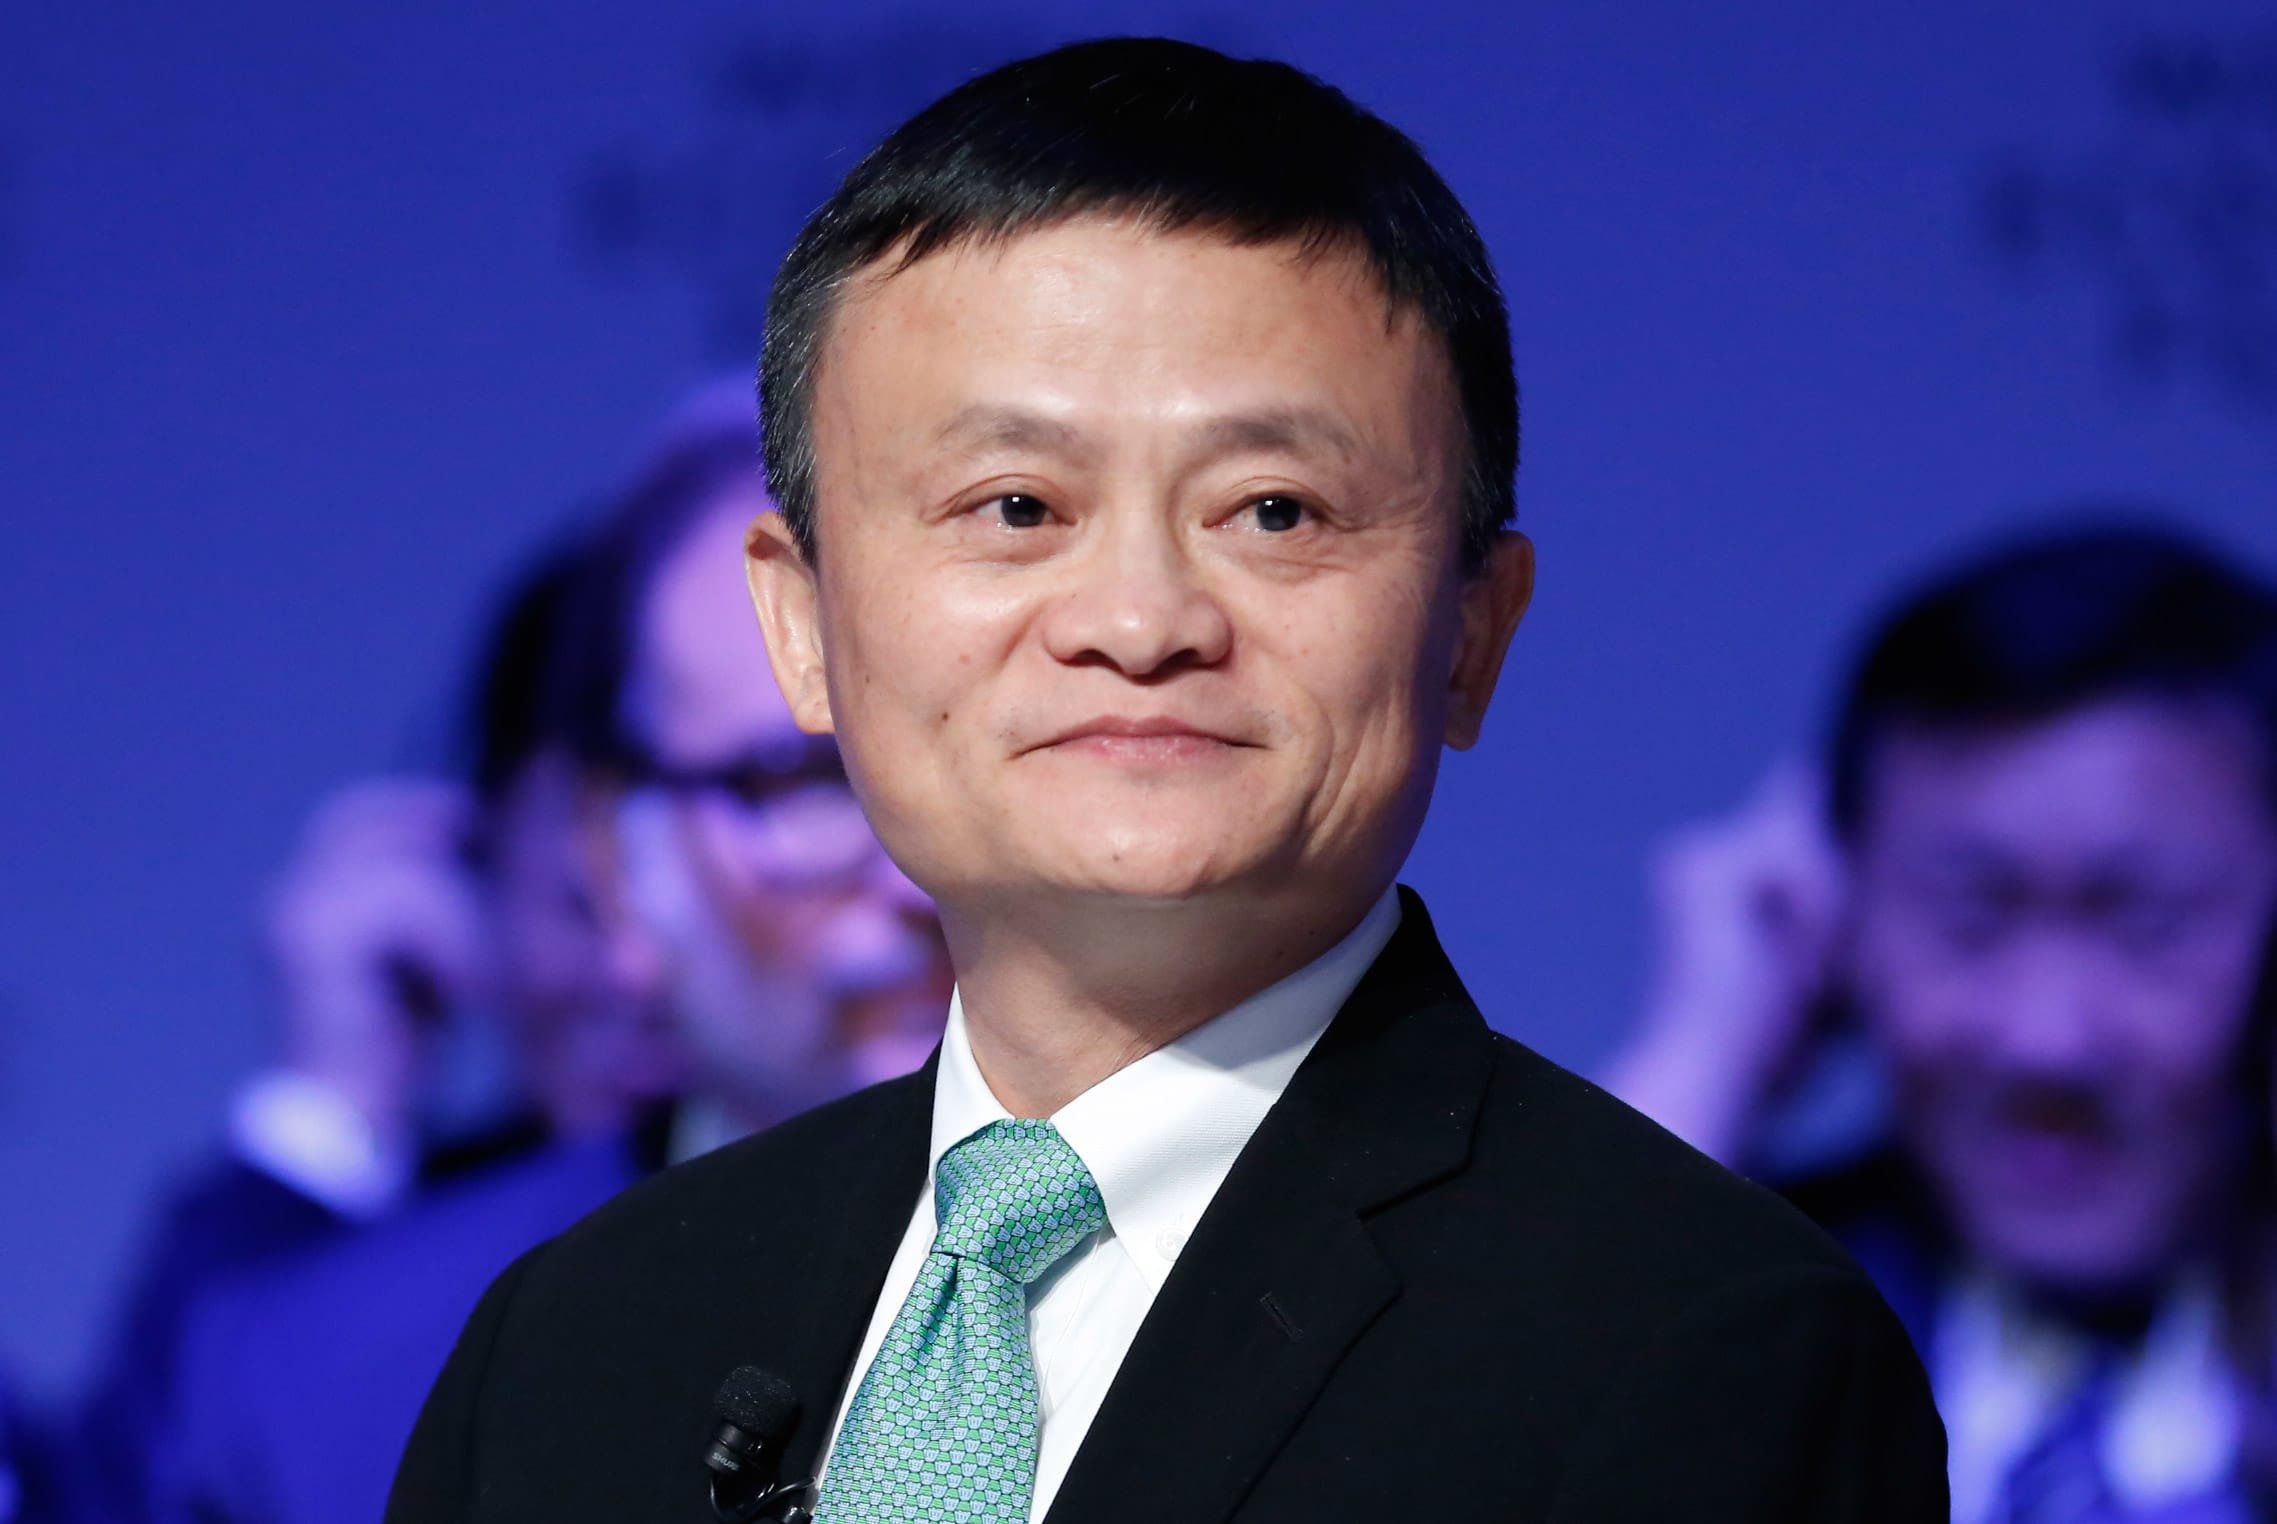 Jack Ma biến mất, Alibaba ngấm đòn và lời cảnh tỉnh từ Bắc Kinh - 1